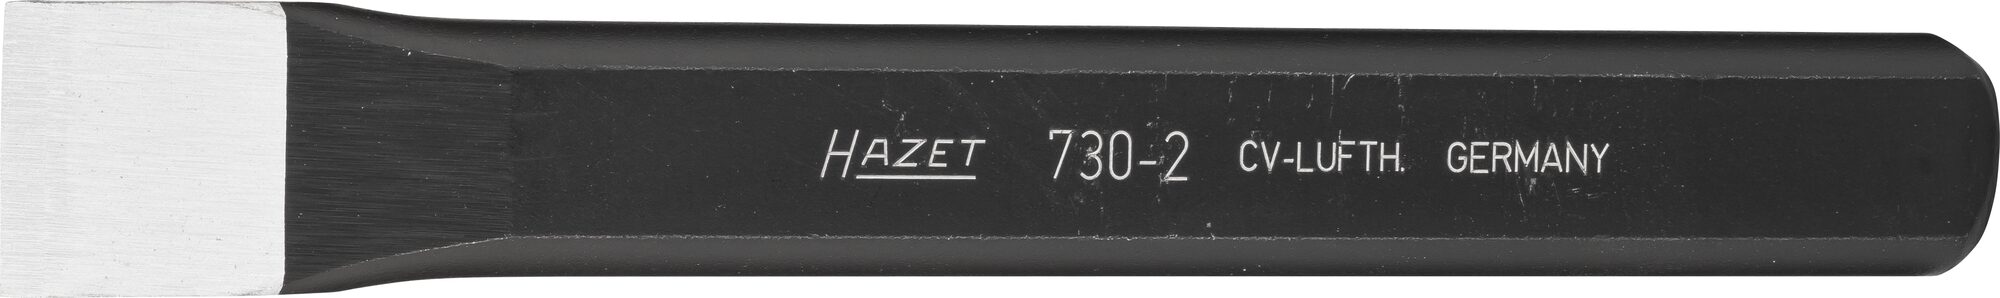 HAZET Flachmeißel 730-2 · 15 mm